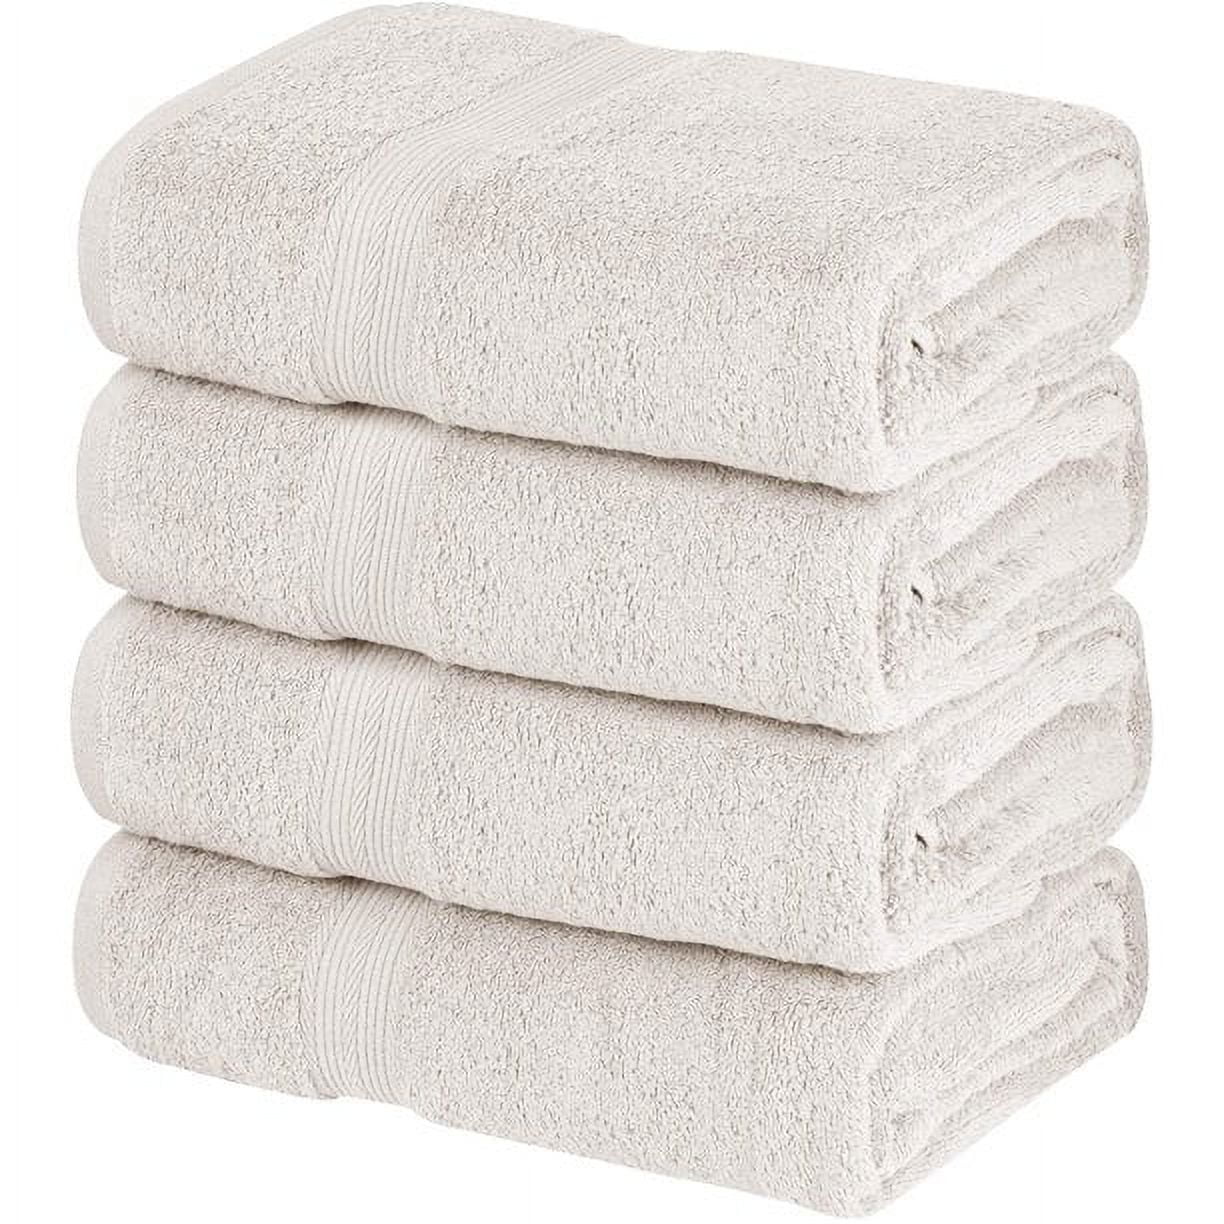 6 PCS Pure Cotton Face Towel Super Absorbent Large Thick Soft